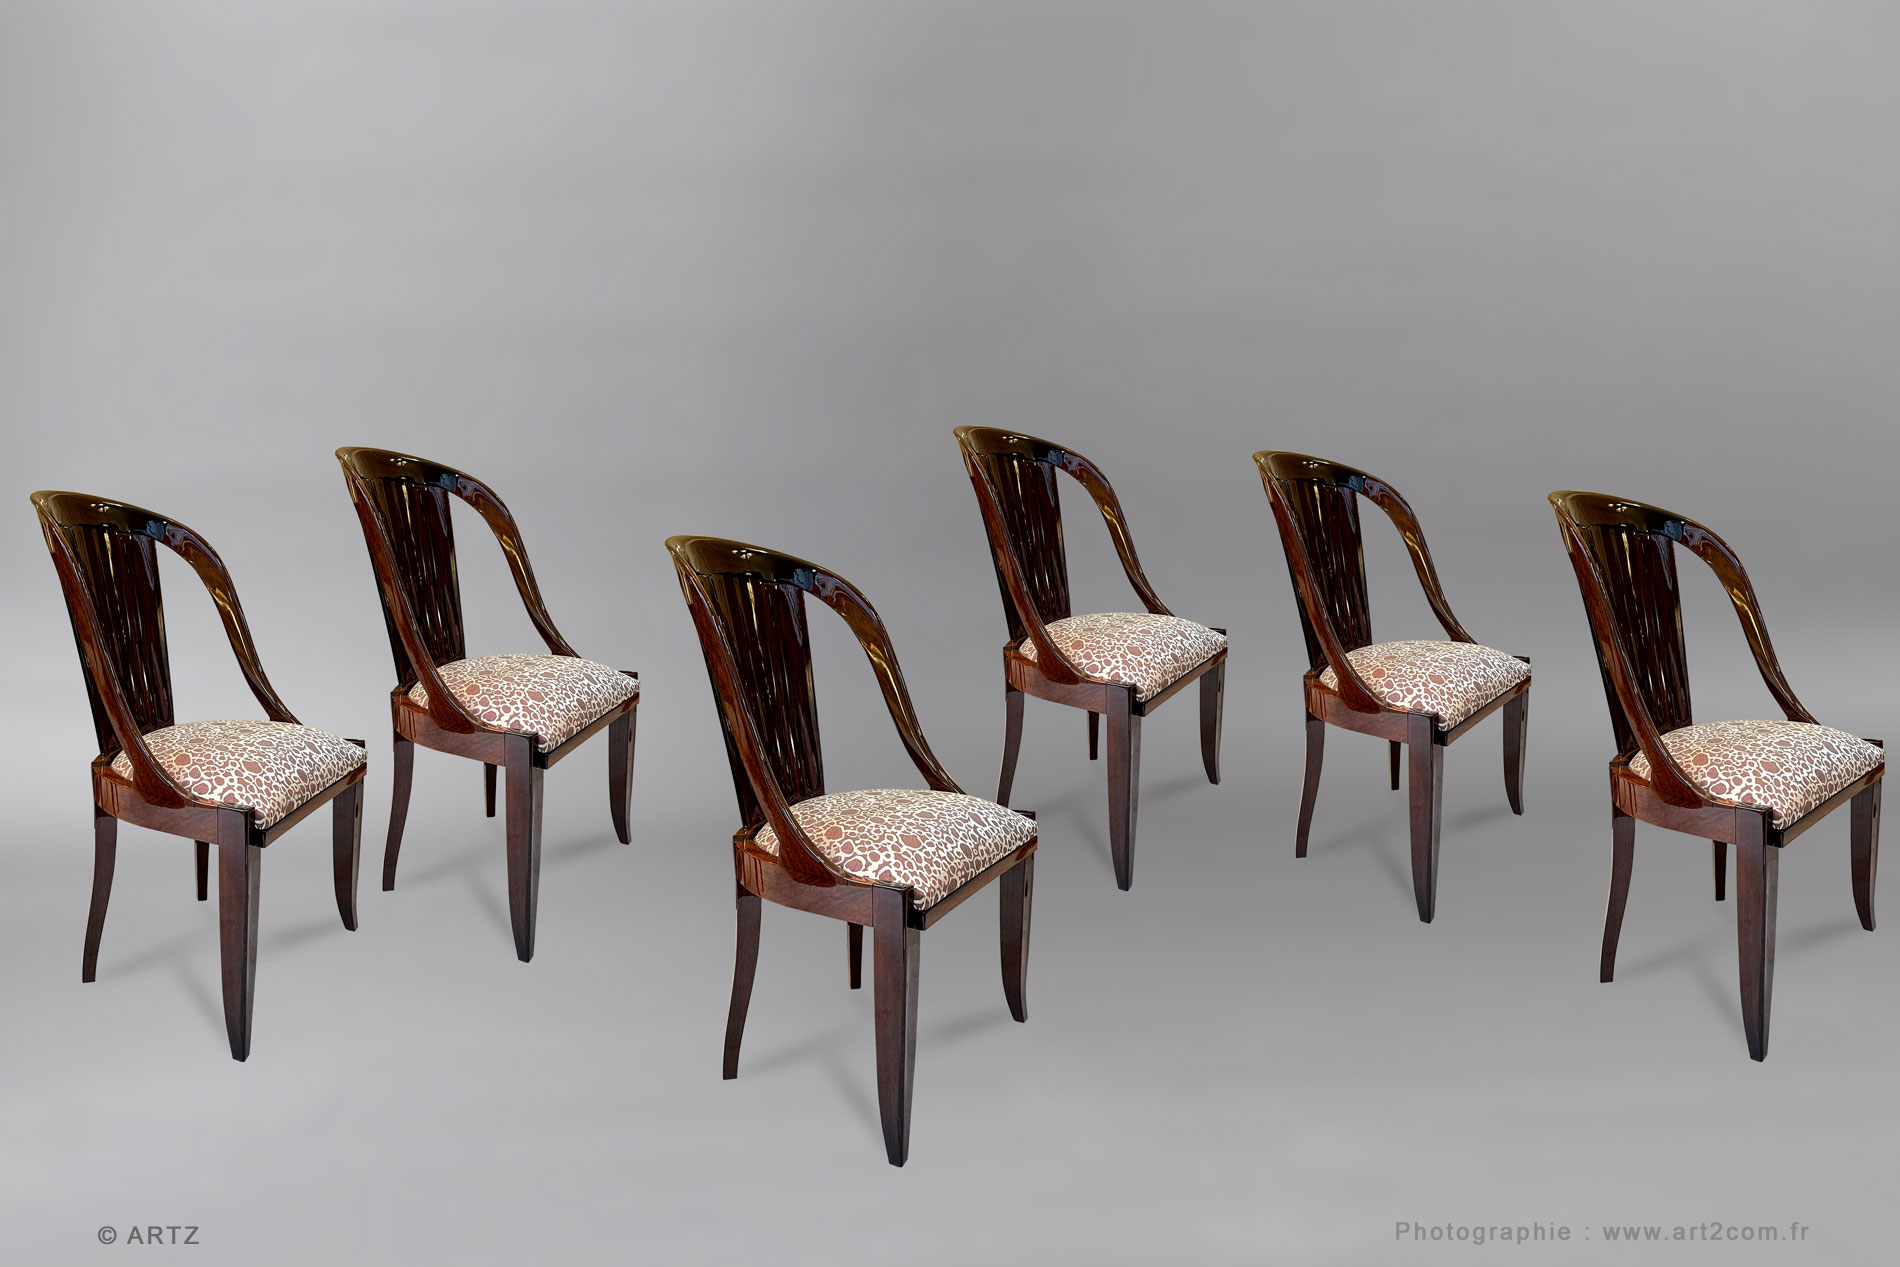 Chairs A.PORTENEUVE 